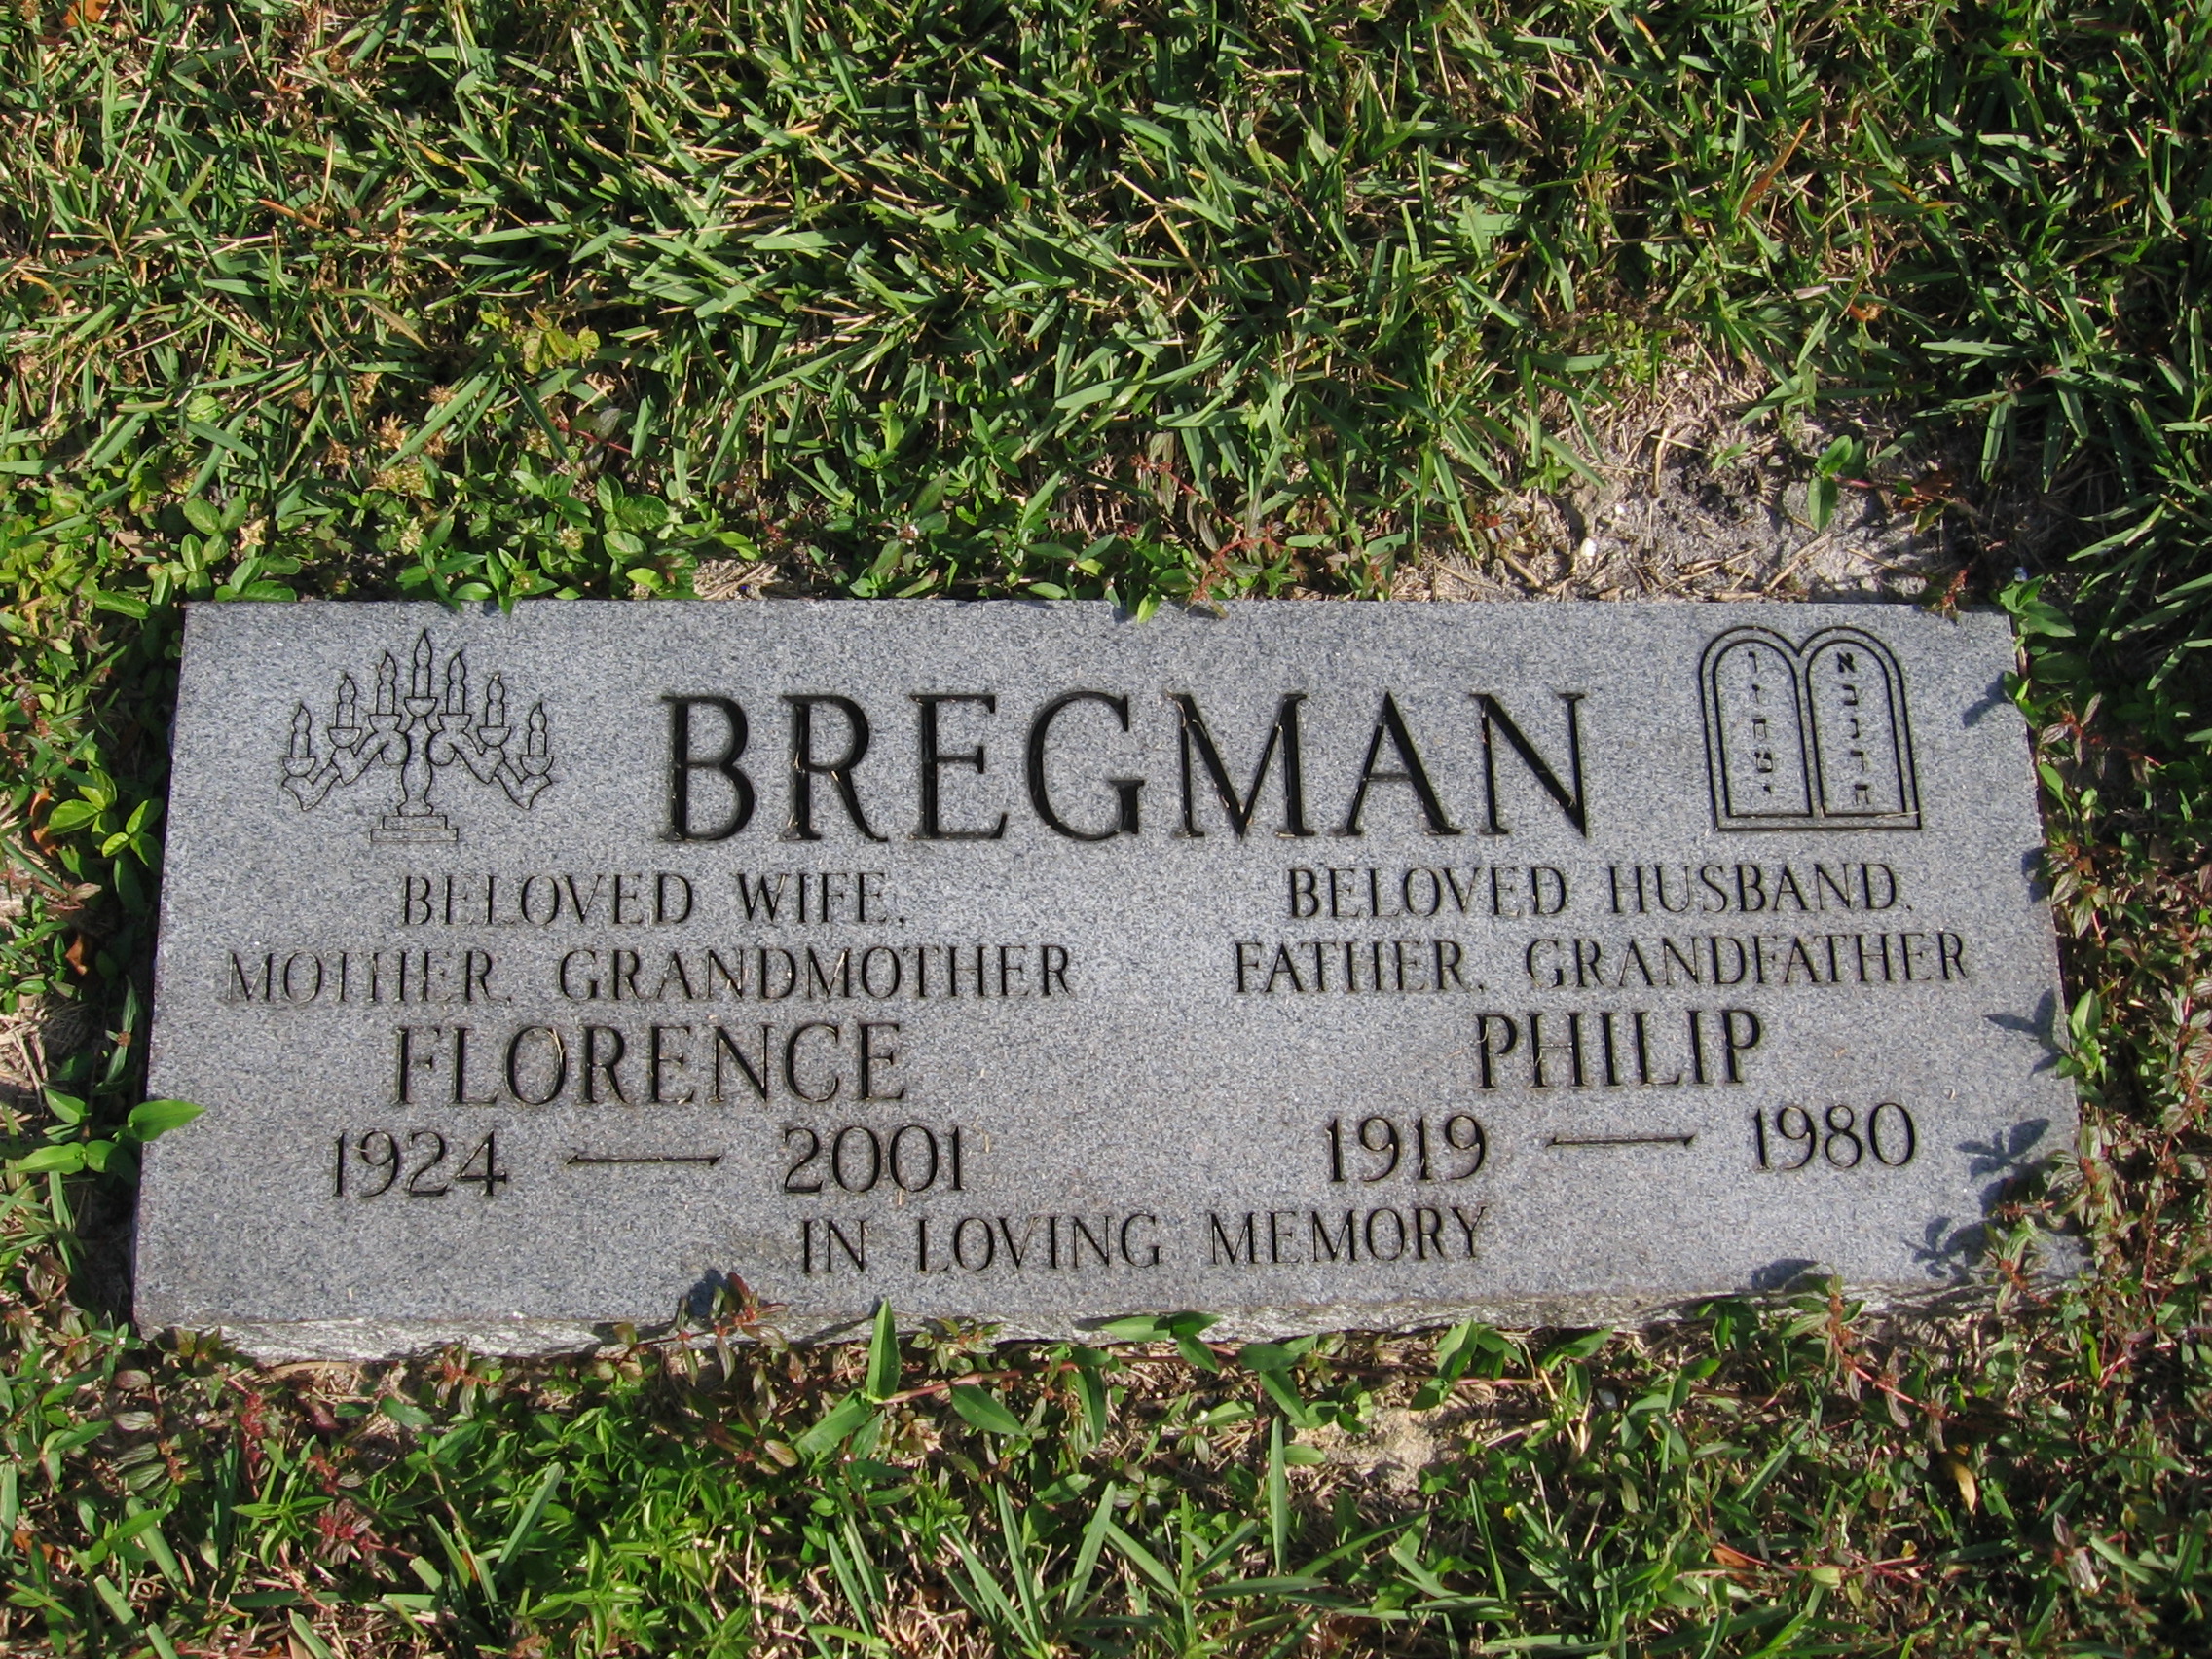 Philip Bregman